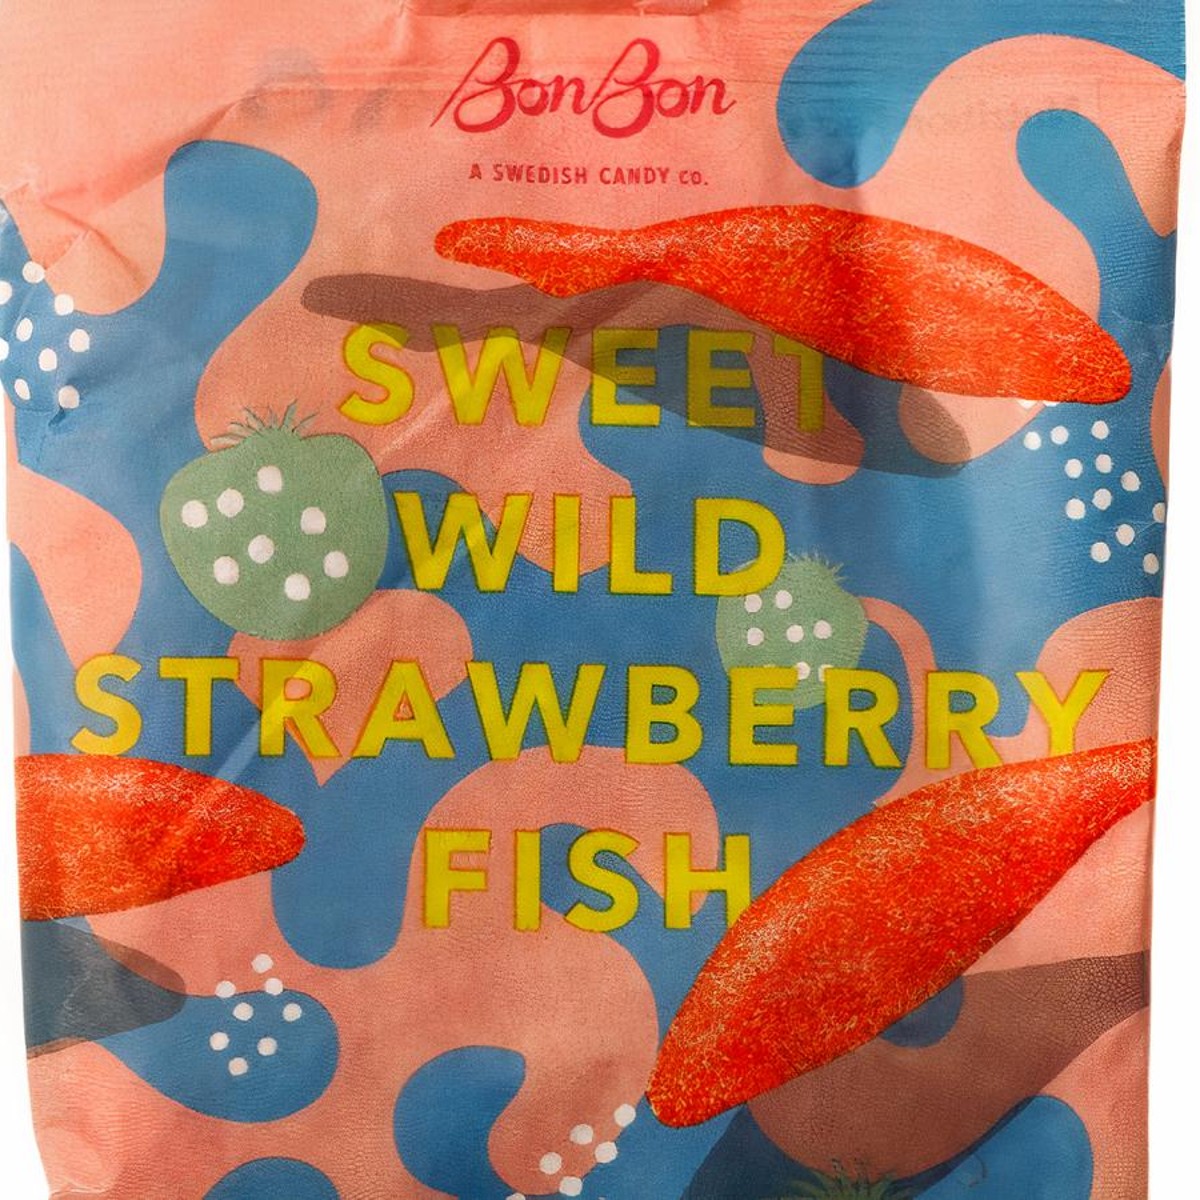 Swedish Fish - Bonbons